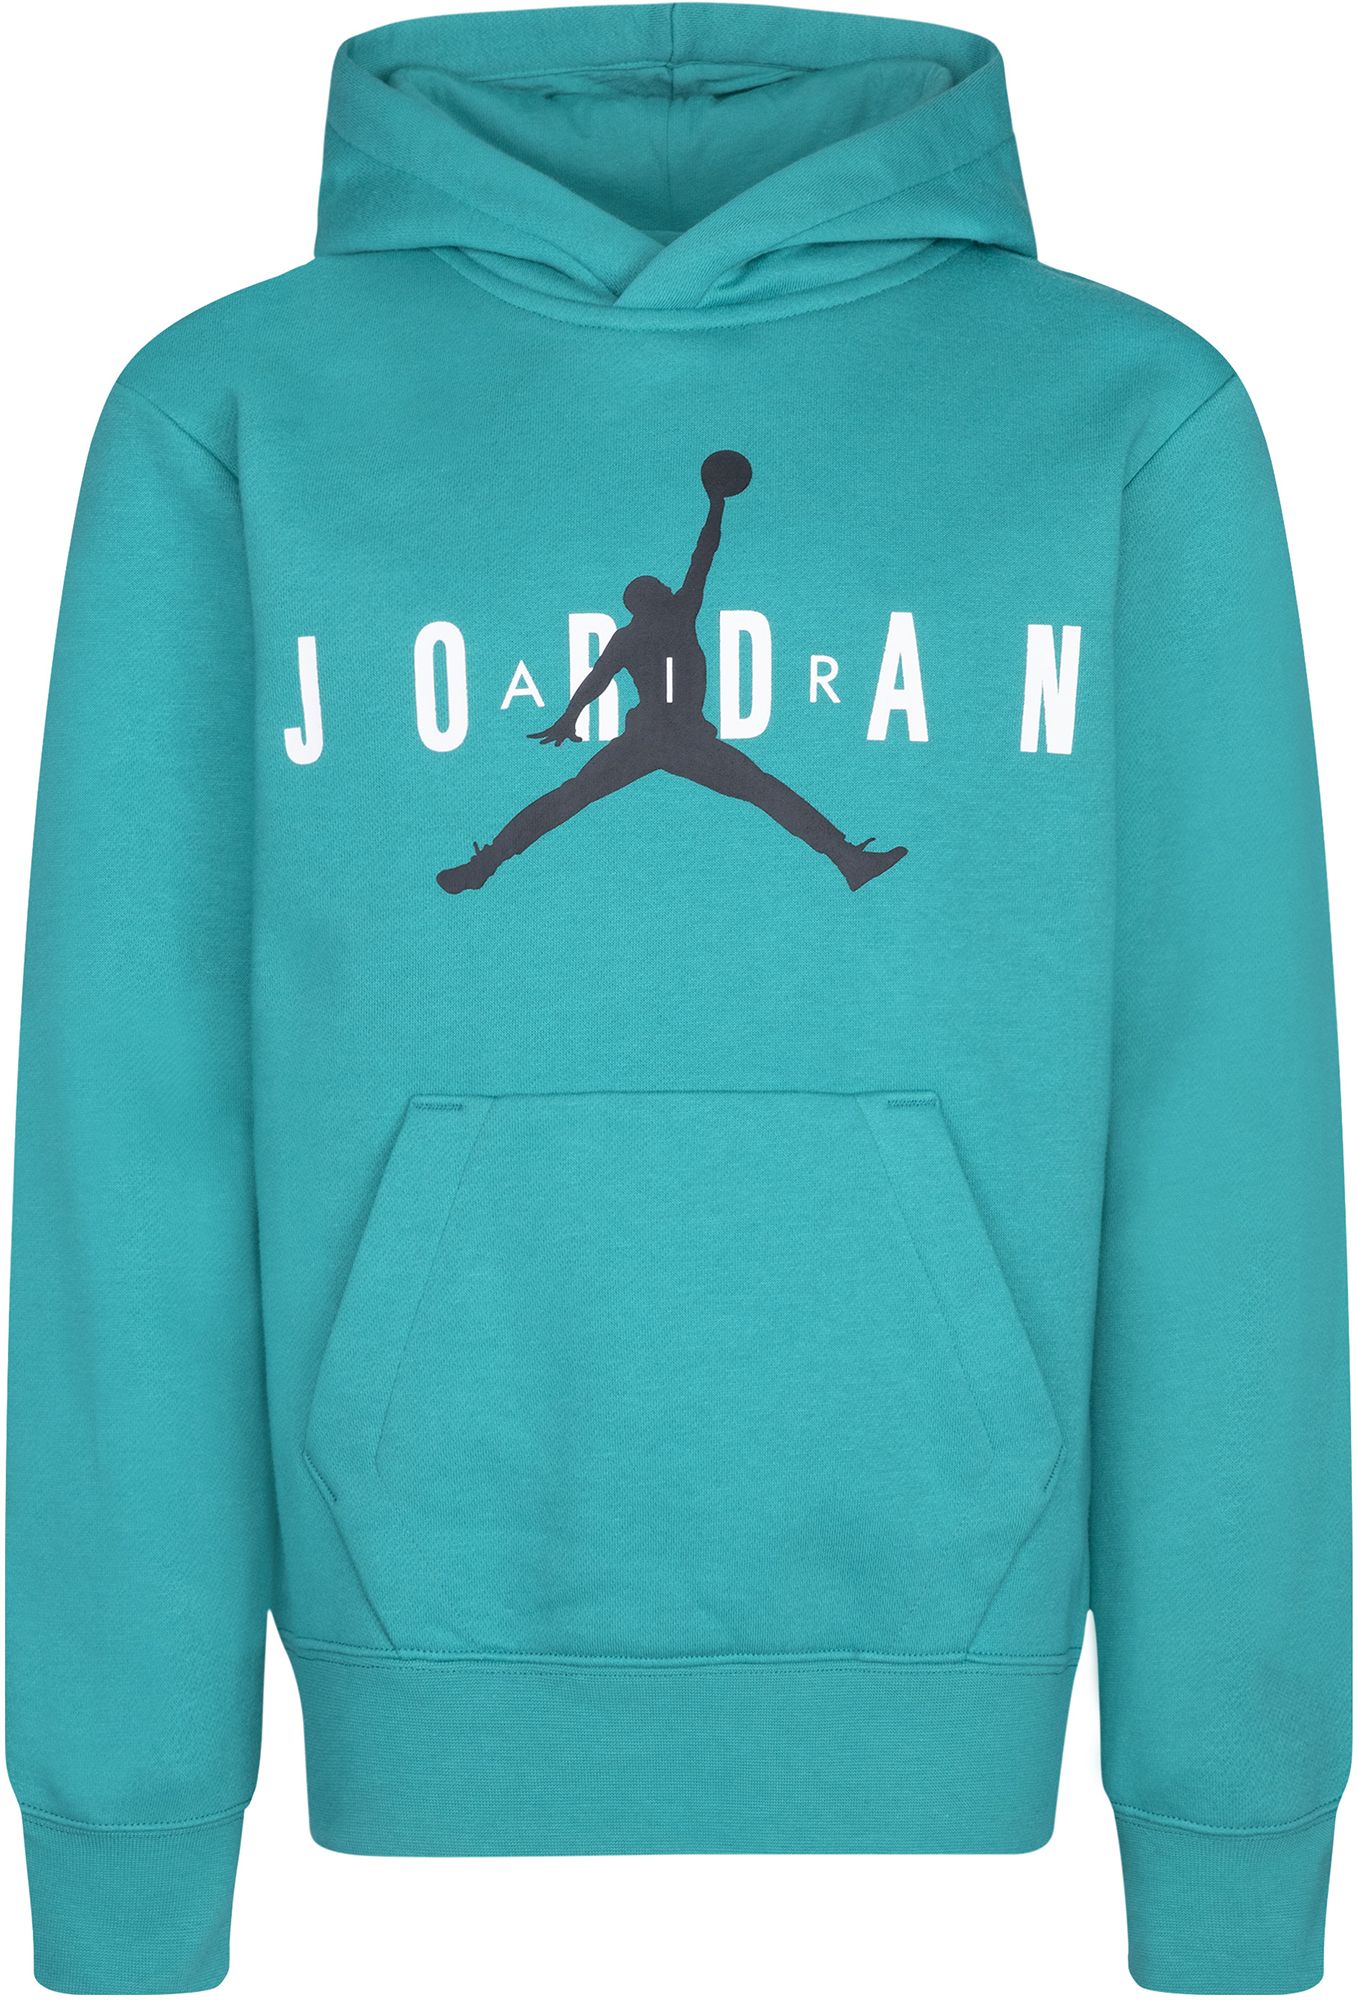 buy jordan apparel online